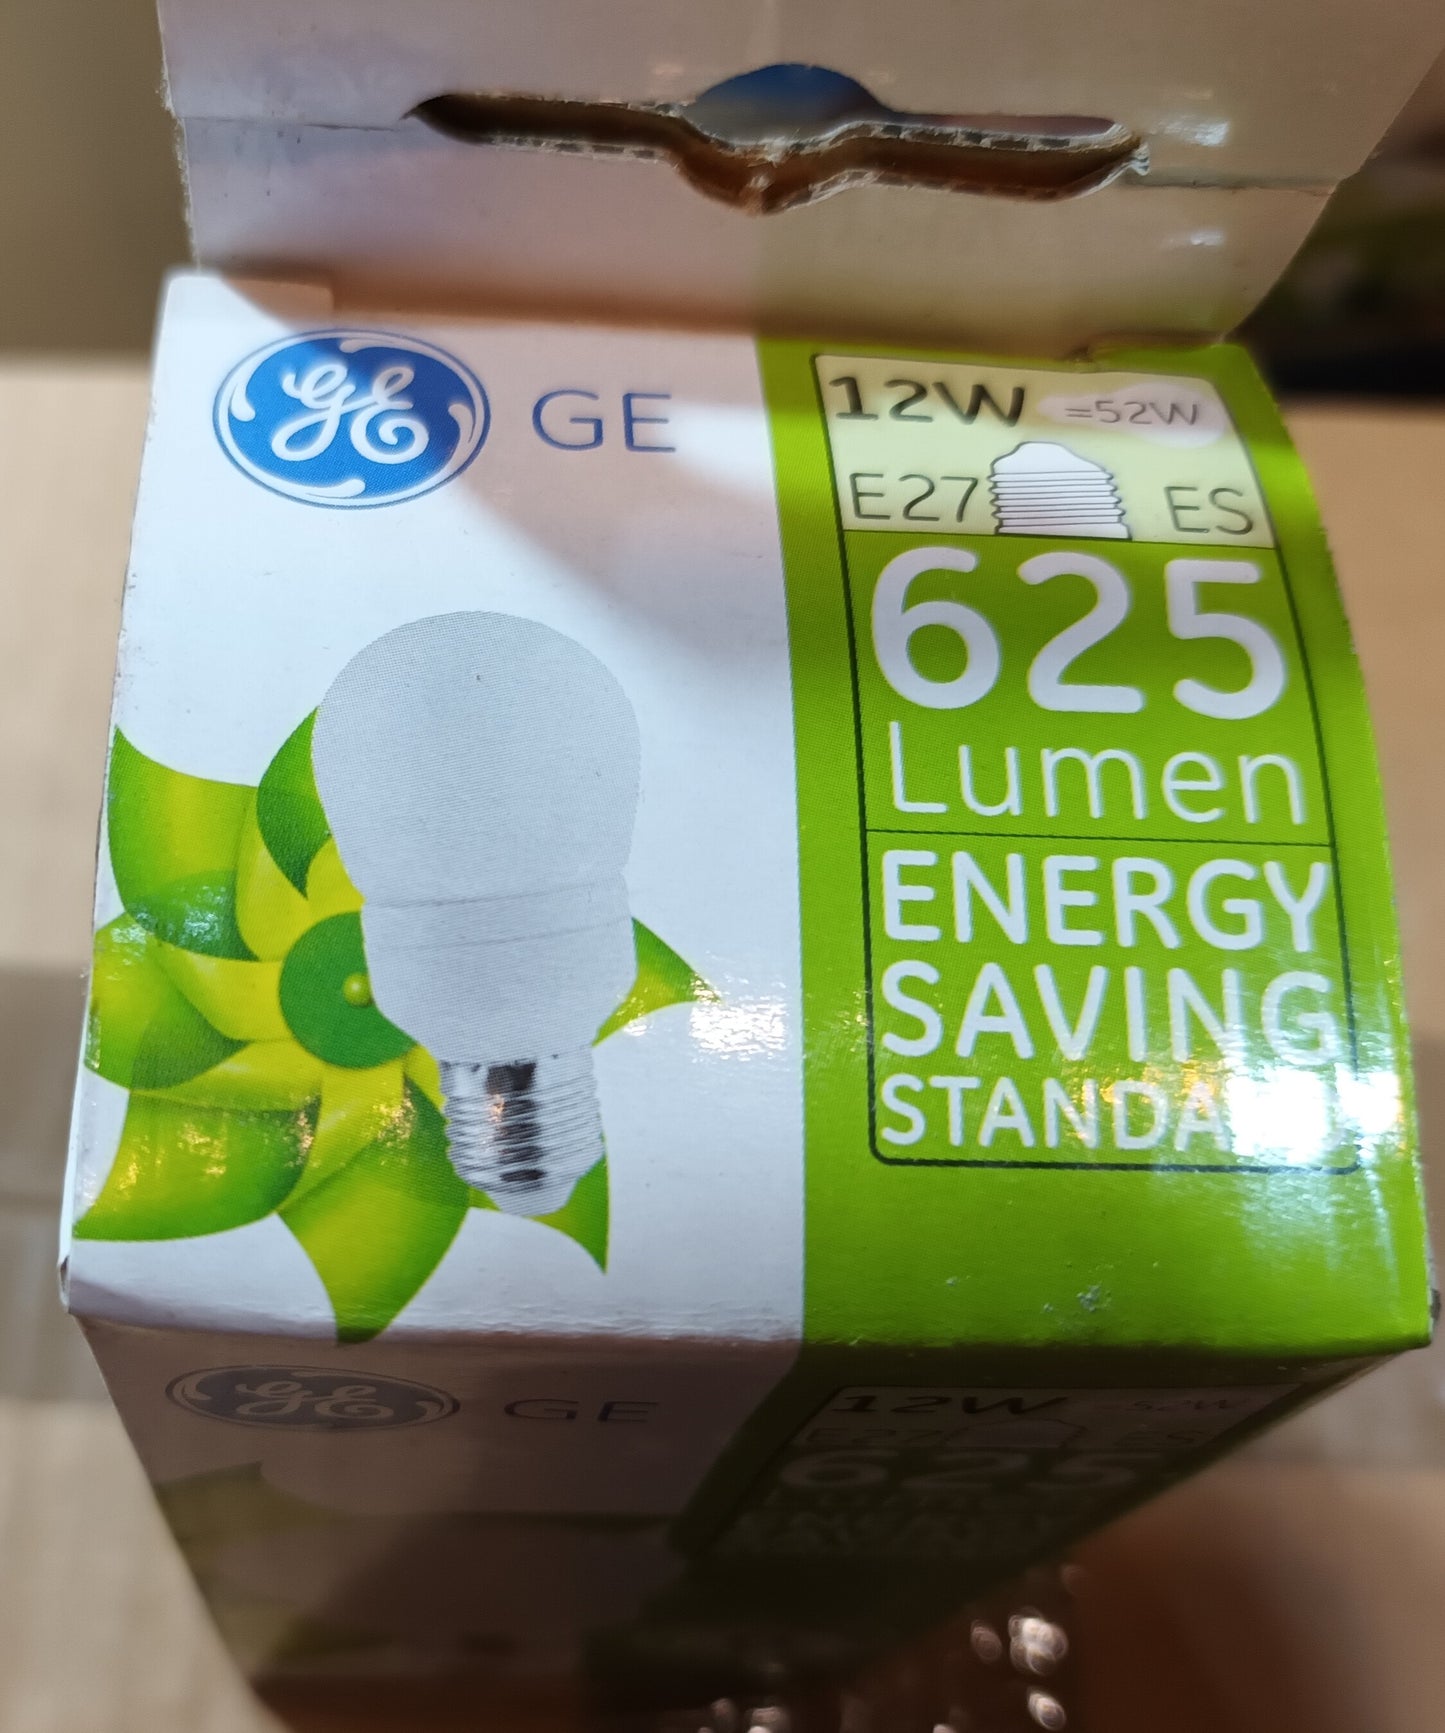 GE 12W (52W) ES / E27 2700K Warm White Low Energy GLS as low as </p>£2.75